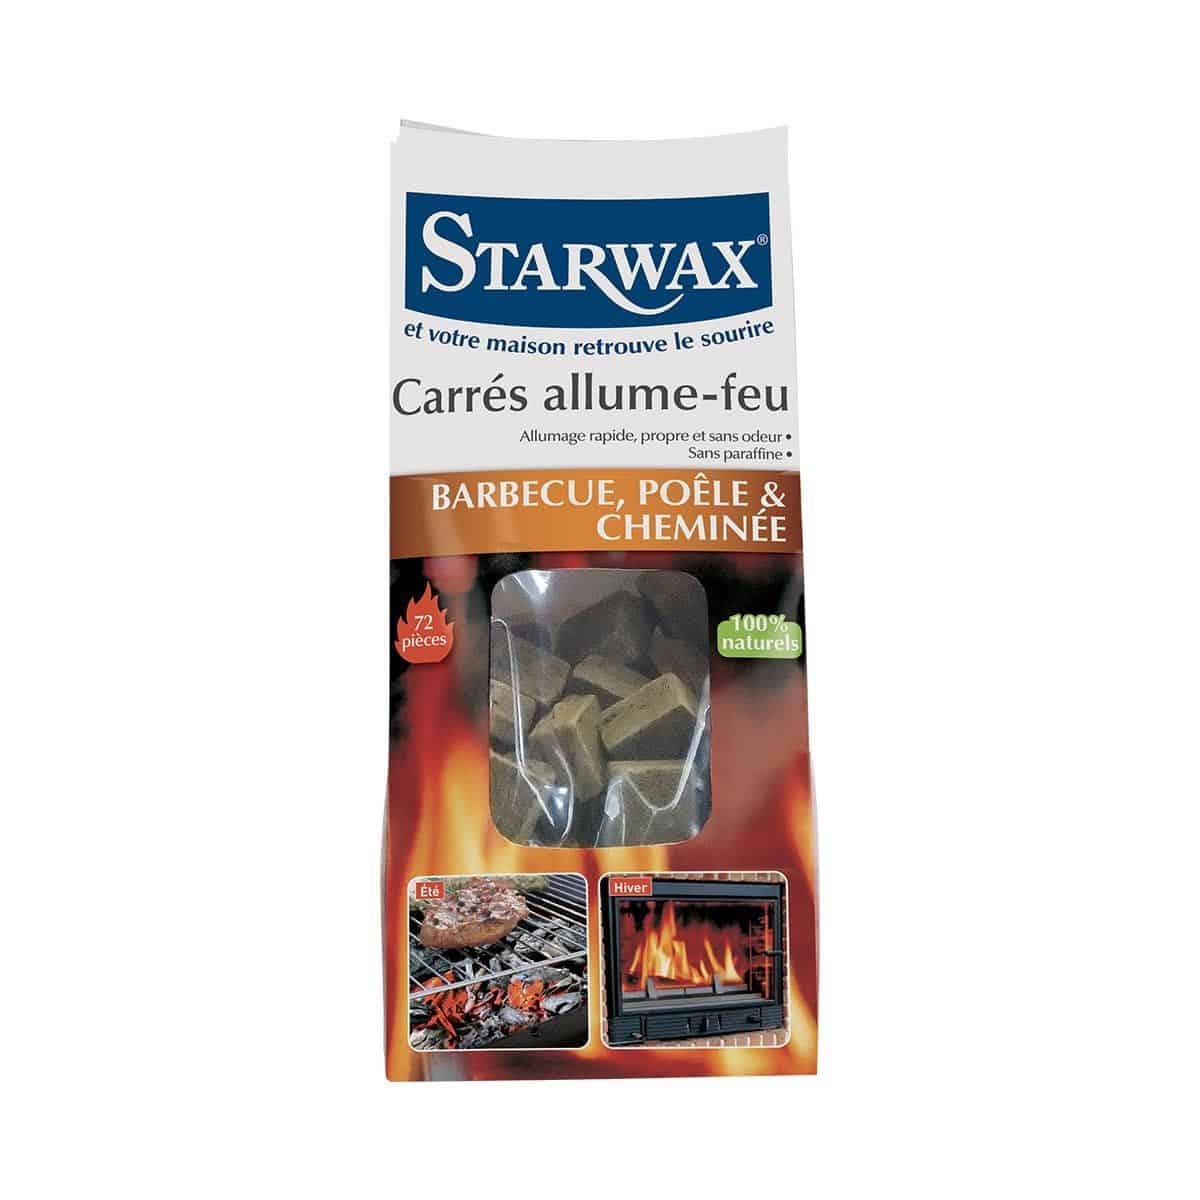 Carrés allume-feu pour barbecue, poêle et cheminée x96 STARWAX